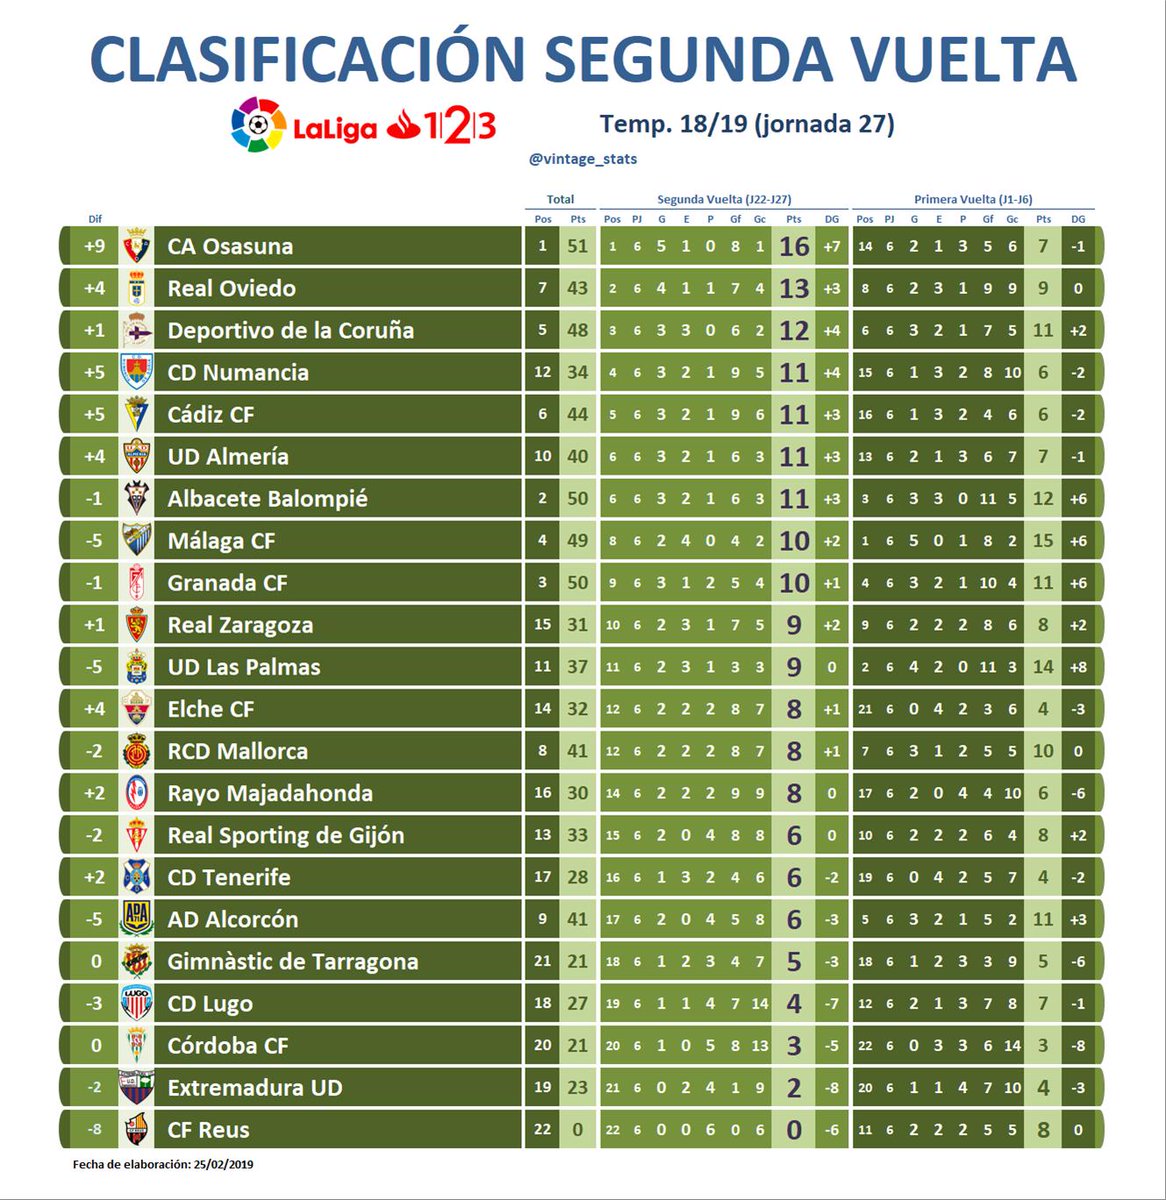 Pais de Ciudadania Cariñoso doble vintage_stats on Twitter: "📊 #Ranking Temp. 18/19 #LaLiga123 J27 🔸  Clasificación 2ª Vuelta - Segunda División [16] @CAOsasuna (+9 puntos) [13]  @RealOviedo (+4) [12] @RCDeportivo (+1) [11] @cdnumancia (+5) [11]  @Cadiz_CF (+5) [11] @U_D_Almeria (+4 ...